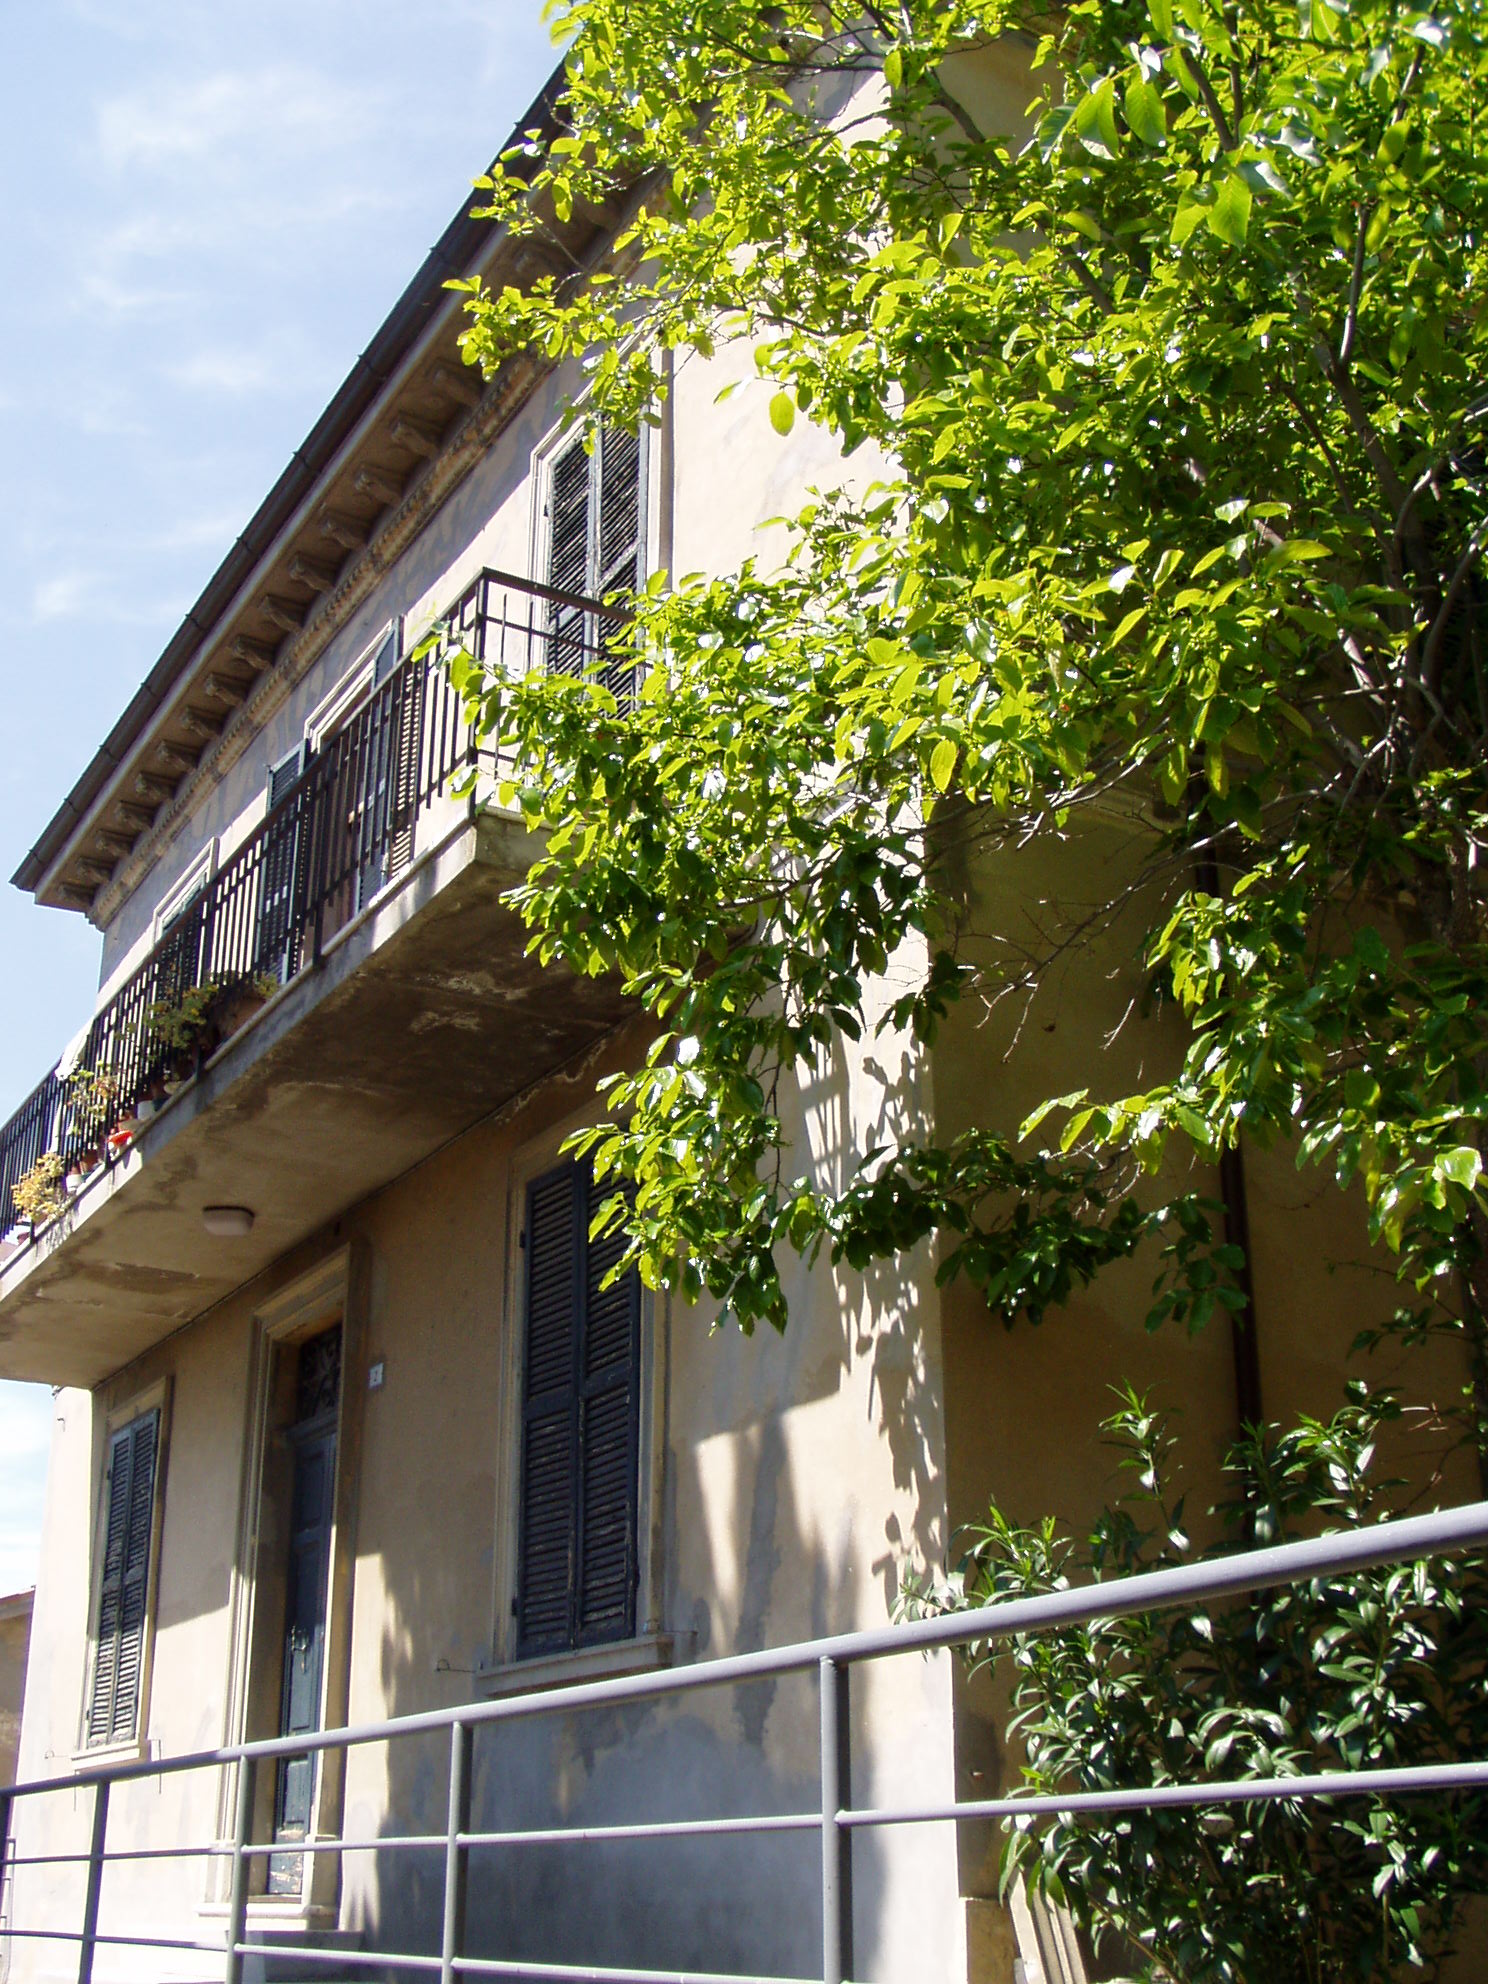 Palazzo nobiliare (palazzo, nobiliare) - Mombaroccio (PU) 